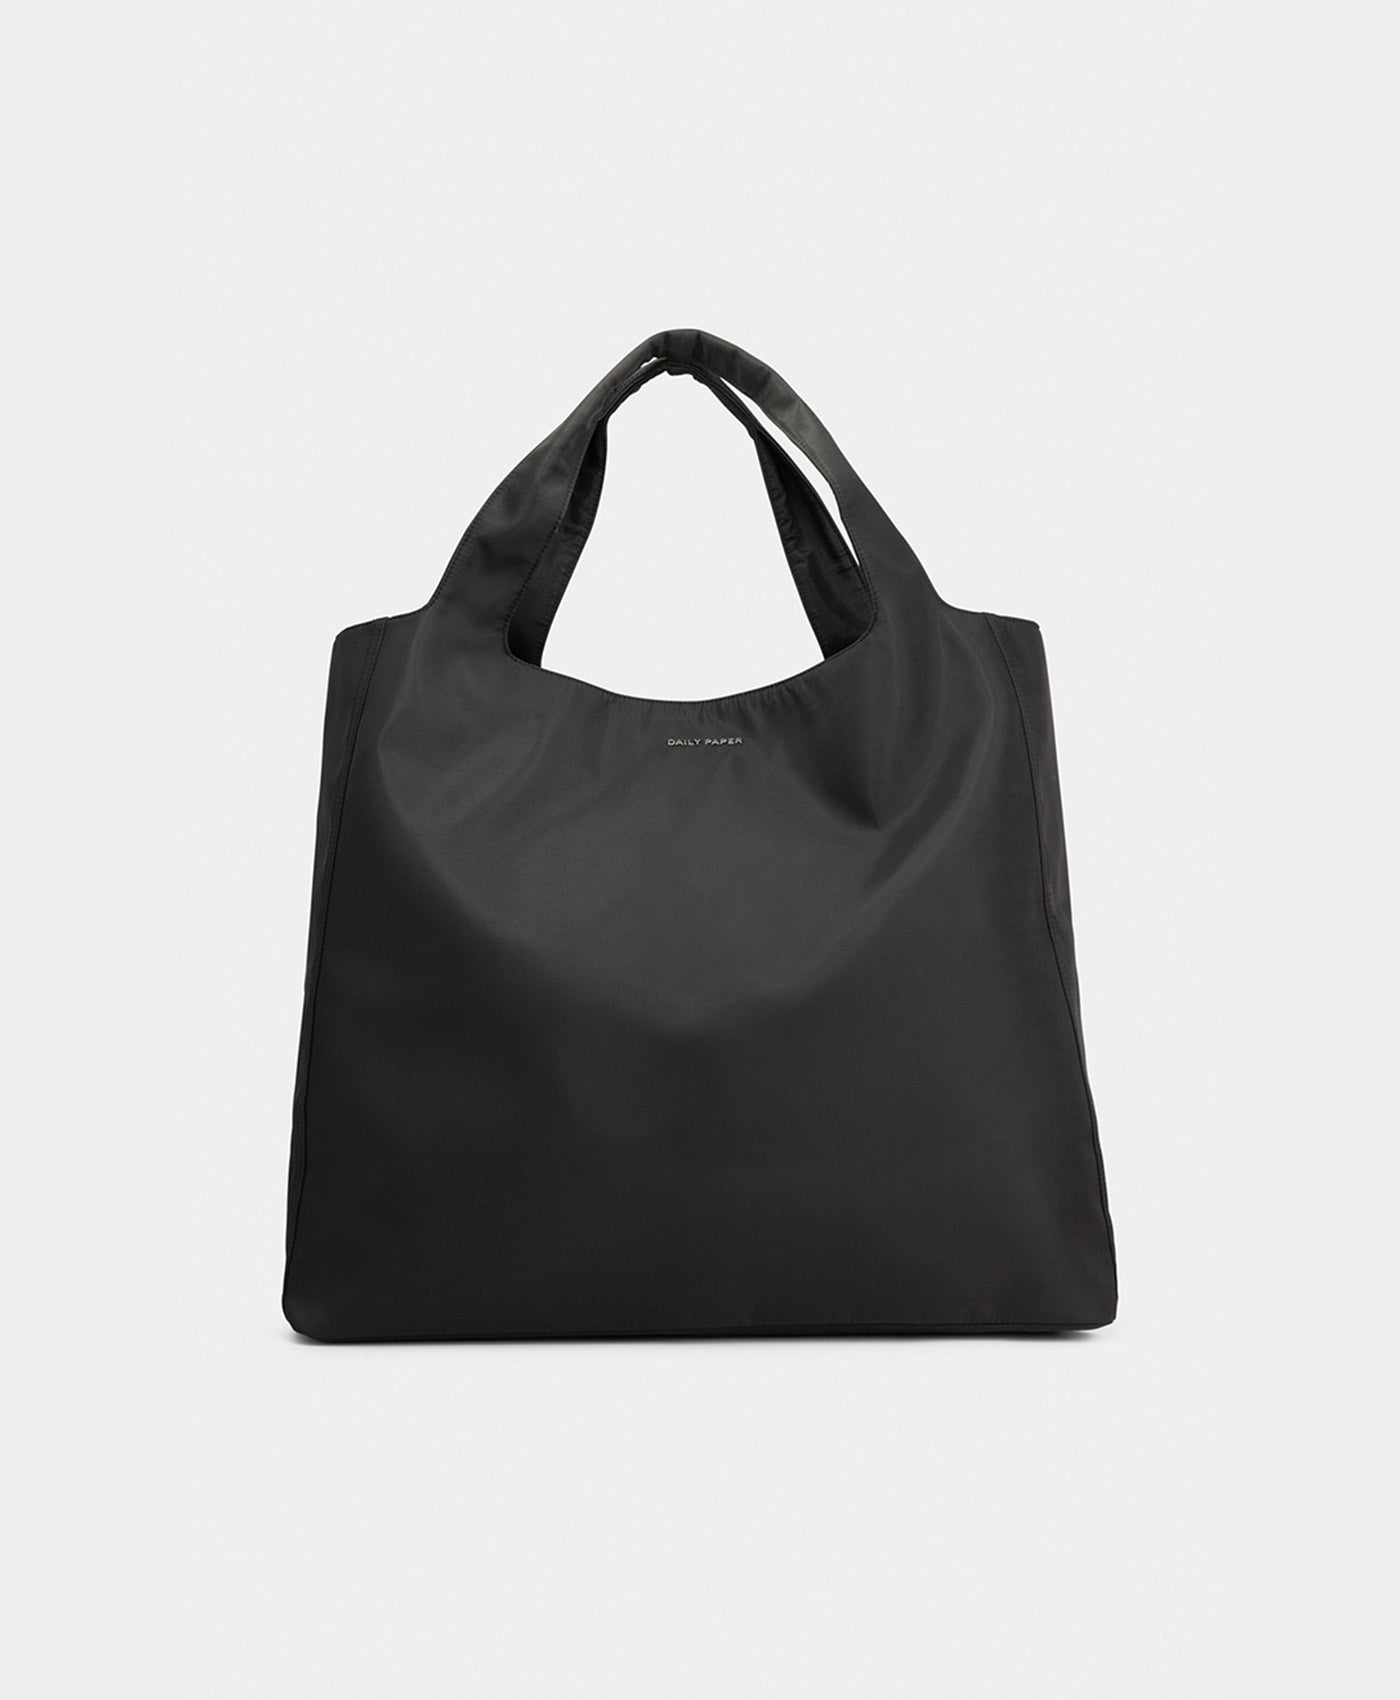 DP - Black Ekatote Bag - Packshot - Front